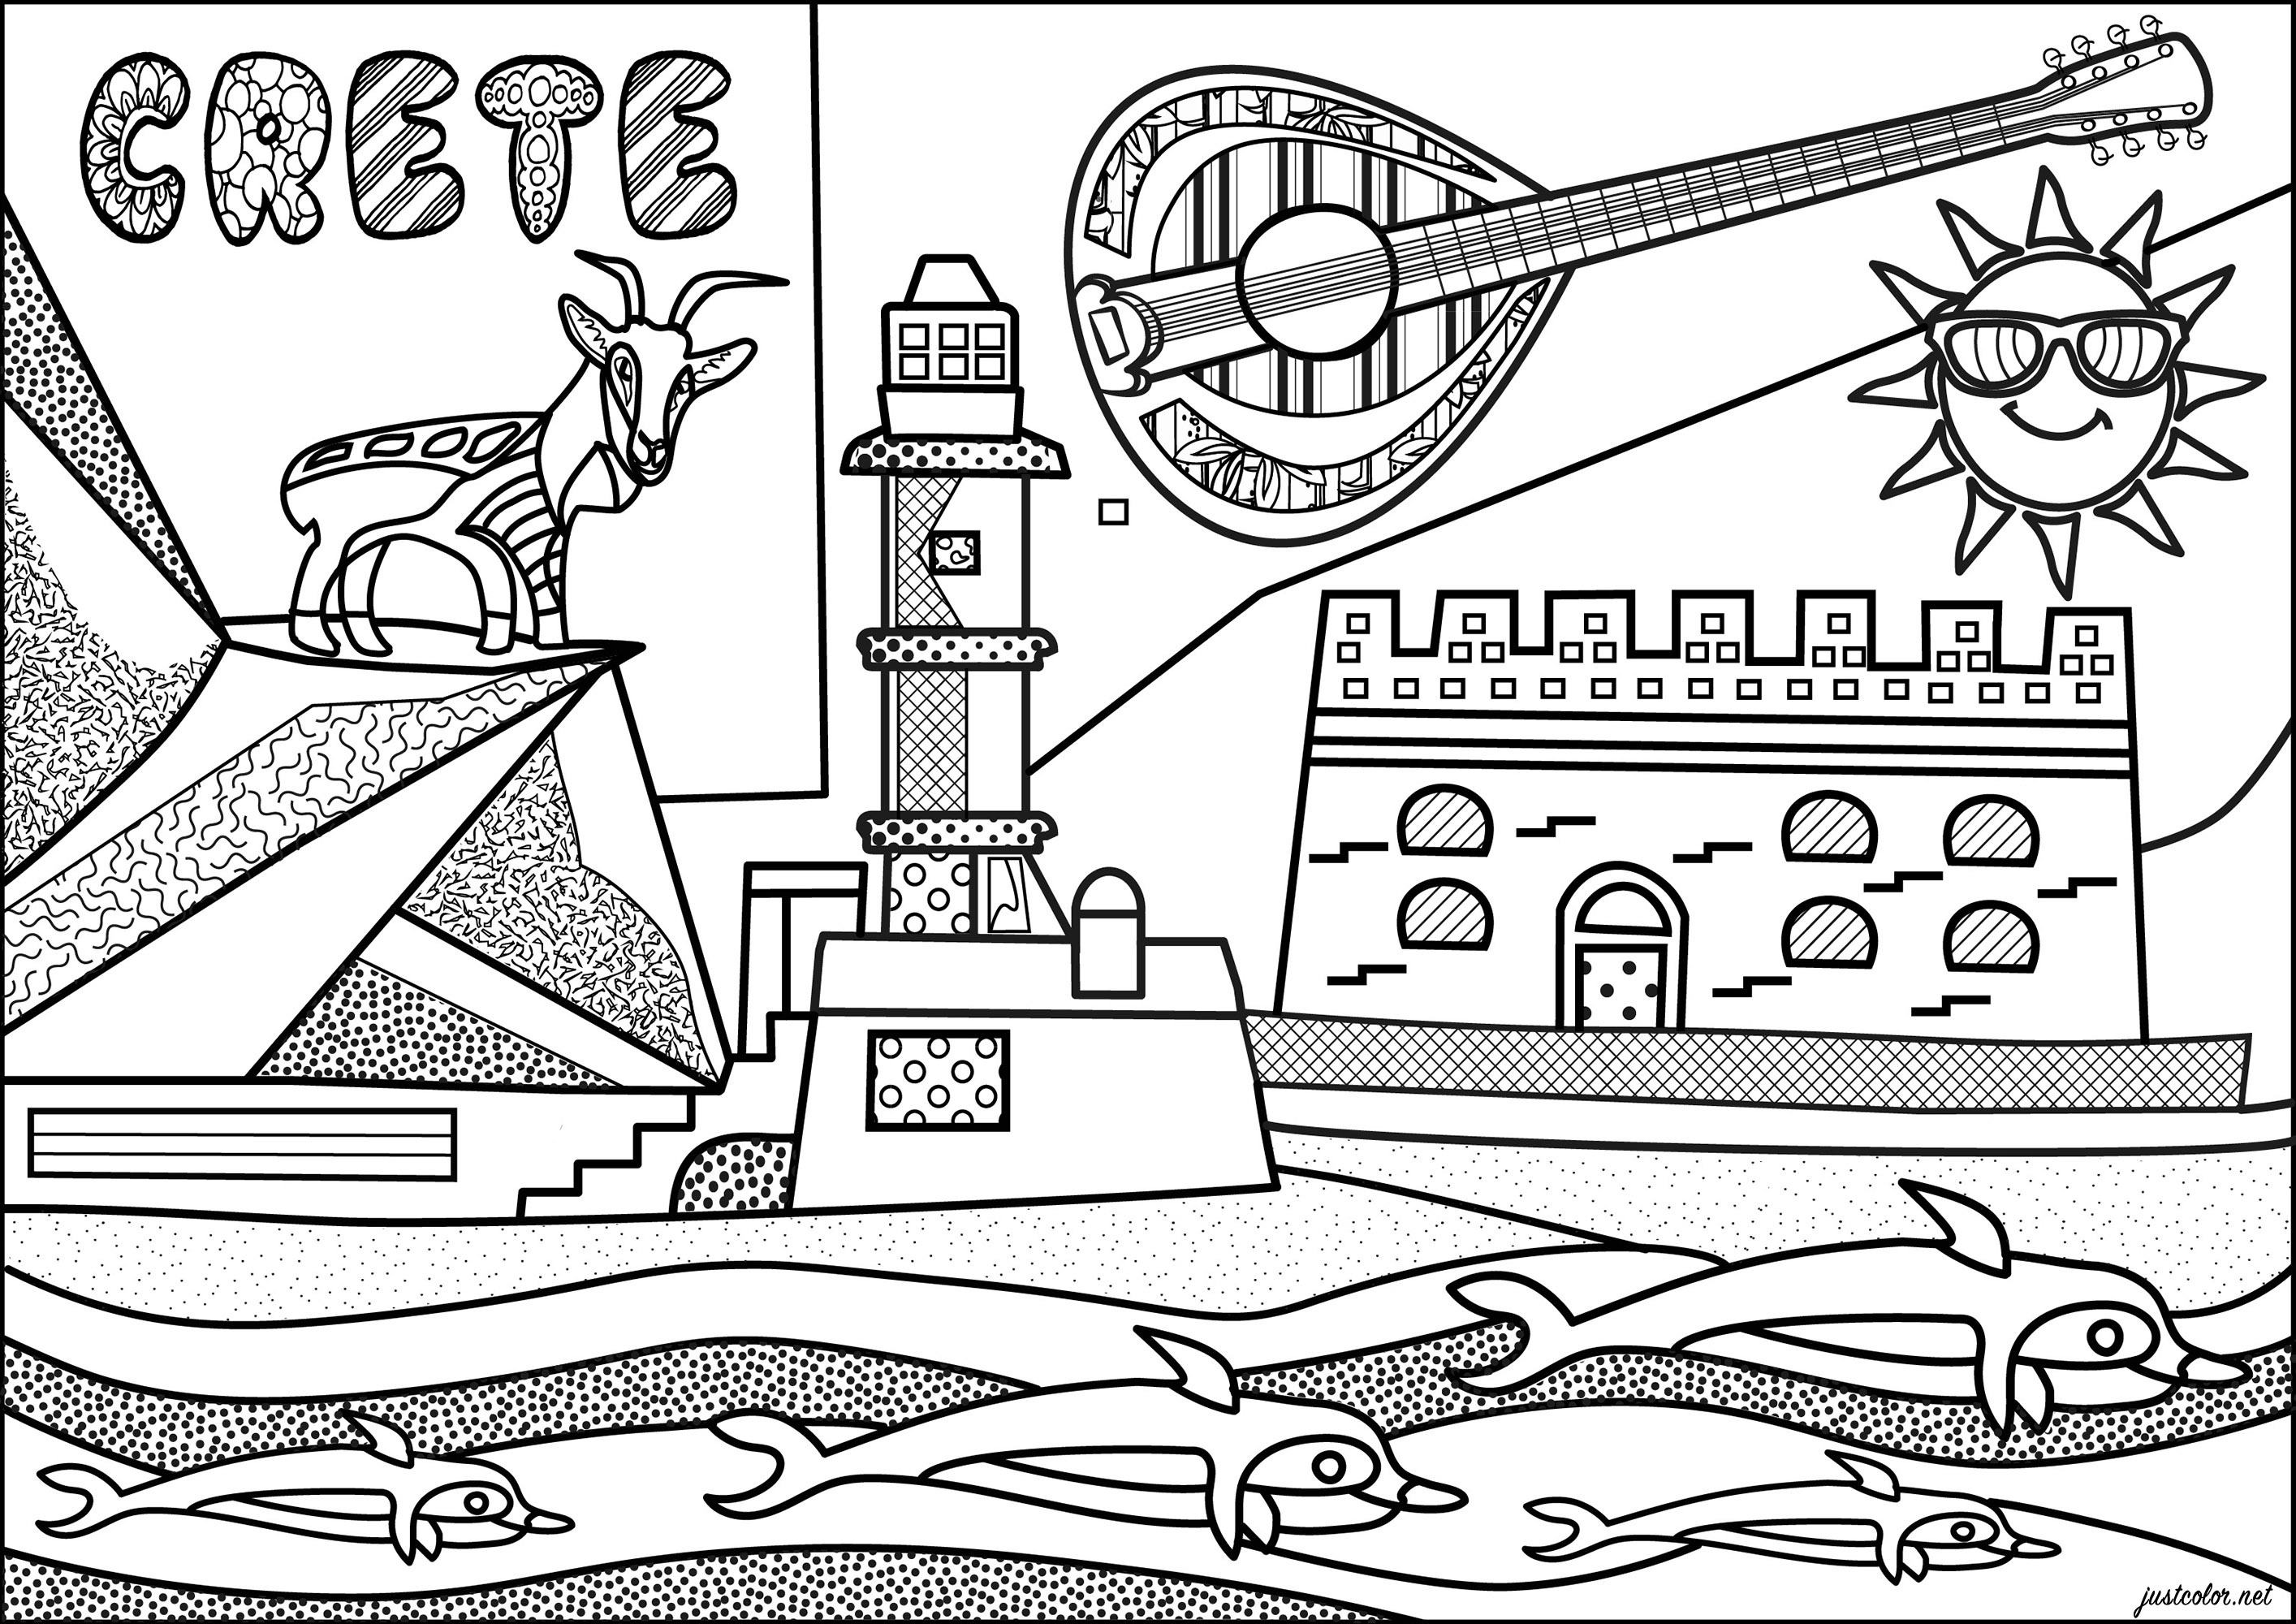 Von der griechischen Insel Kreta inspirierte Farbgebung mit verschiedenen typischen Denkmälern. Diese Malvorlage zeigt die Festung von Heraklion, den ägyptischen Leuchtturm von Chania und eine berühmte Kri-kri Ziege.Eine originelle Illustration, inspiriert vom Stil der 'Naiven Kunst', Künstler : Morgan